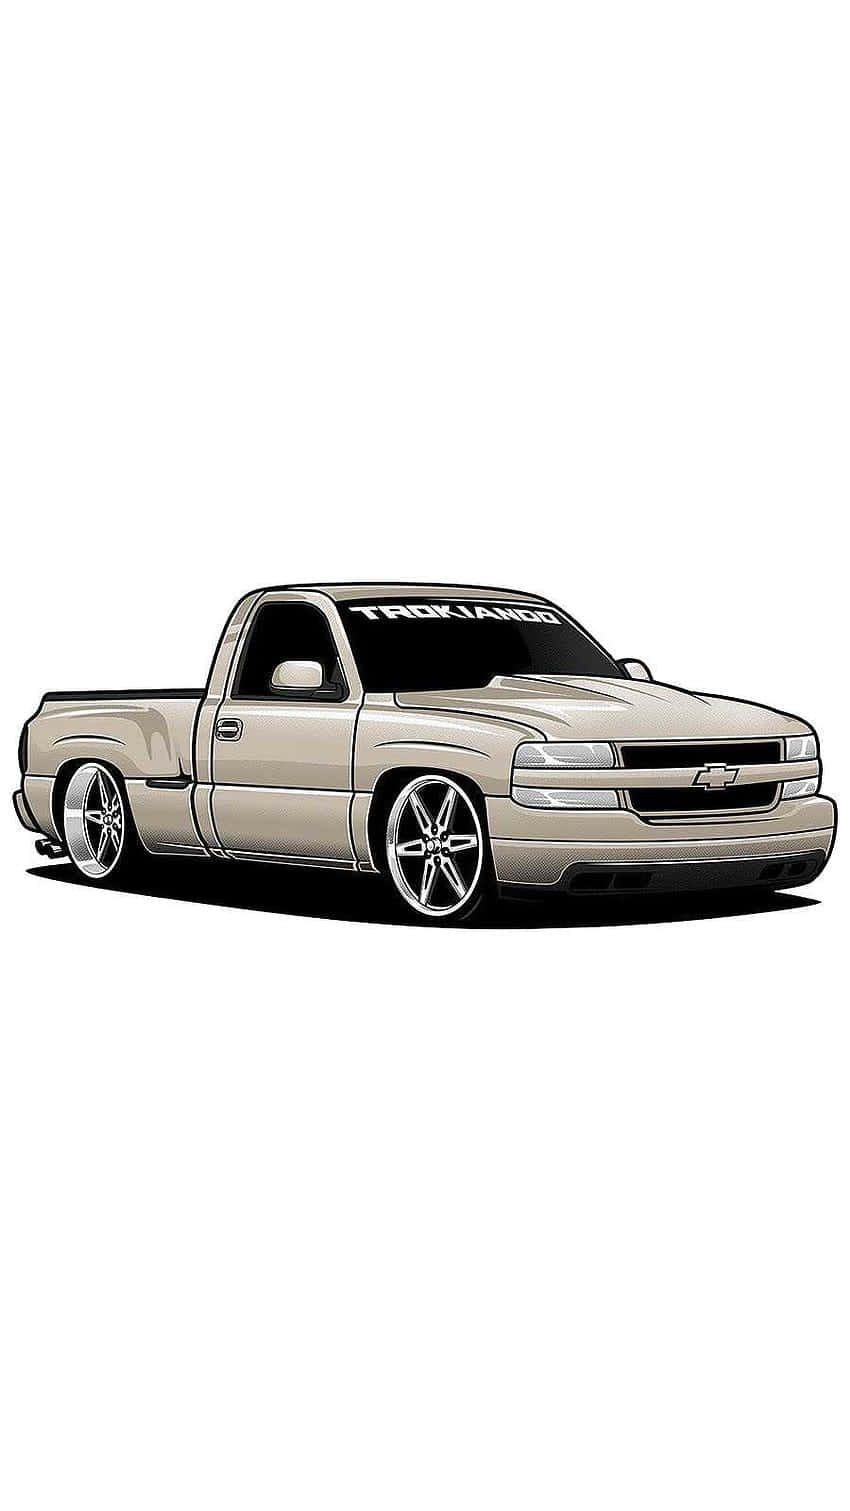 Trokiando Chevy Truck Illustration Wallpaper